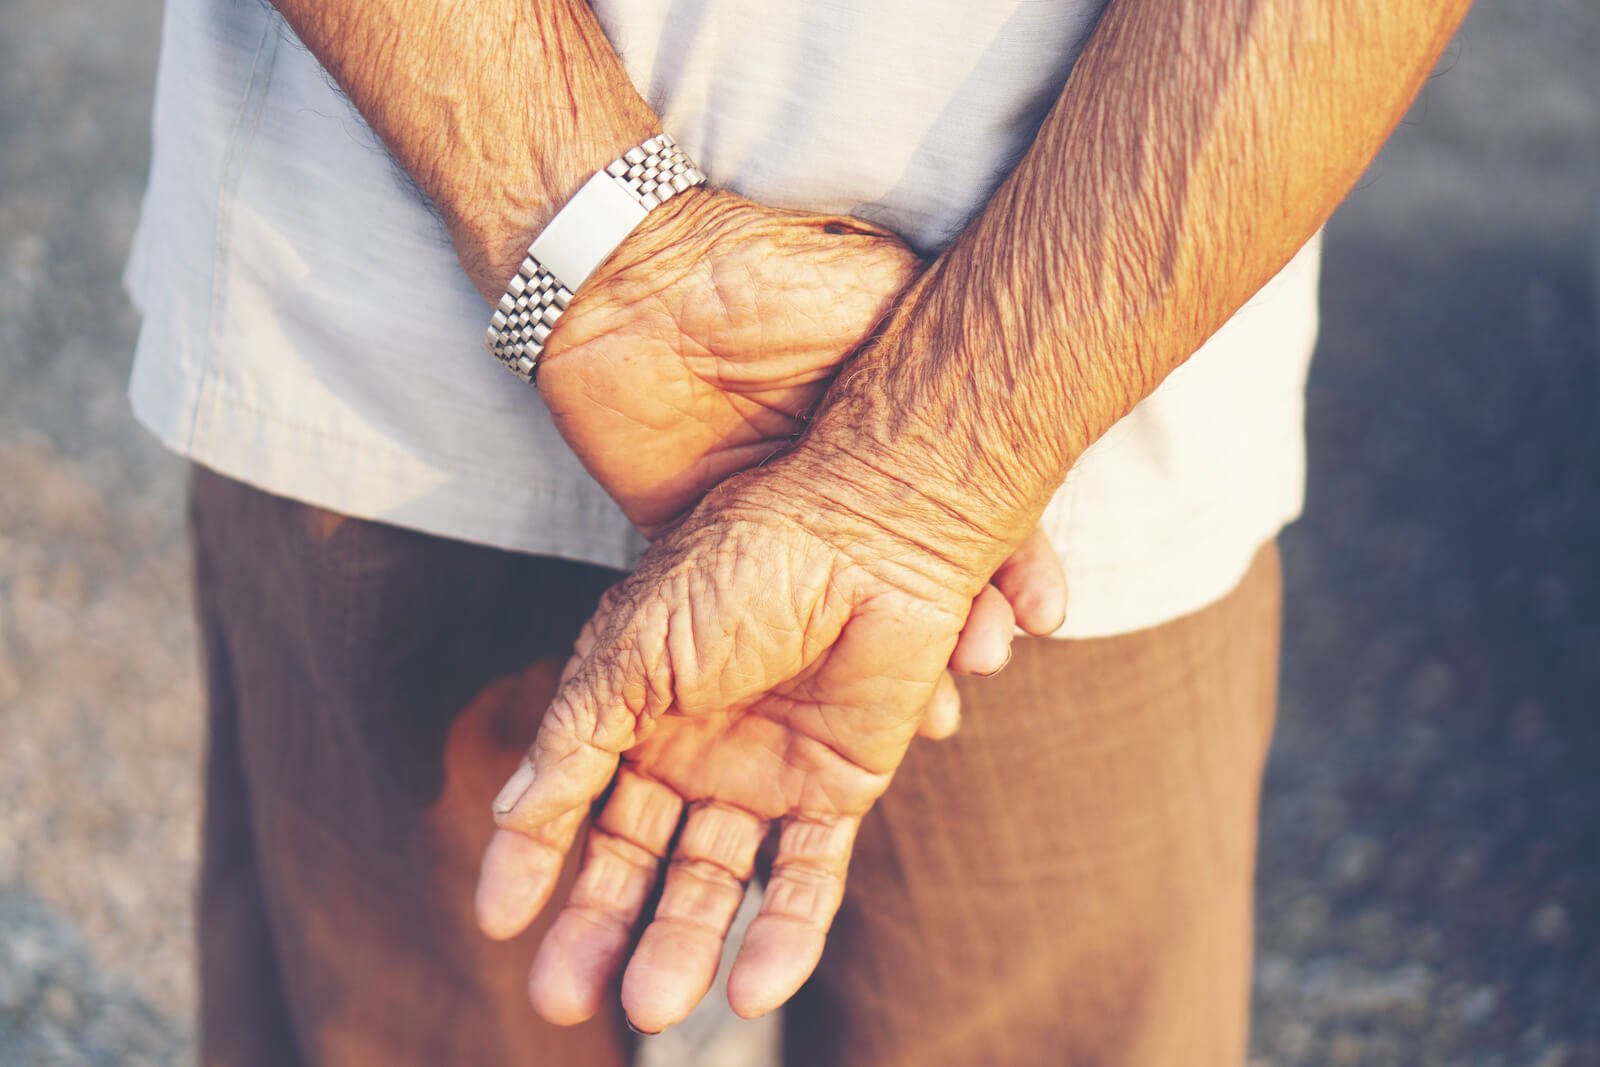 Close-up of an elderly man's hands